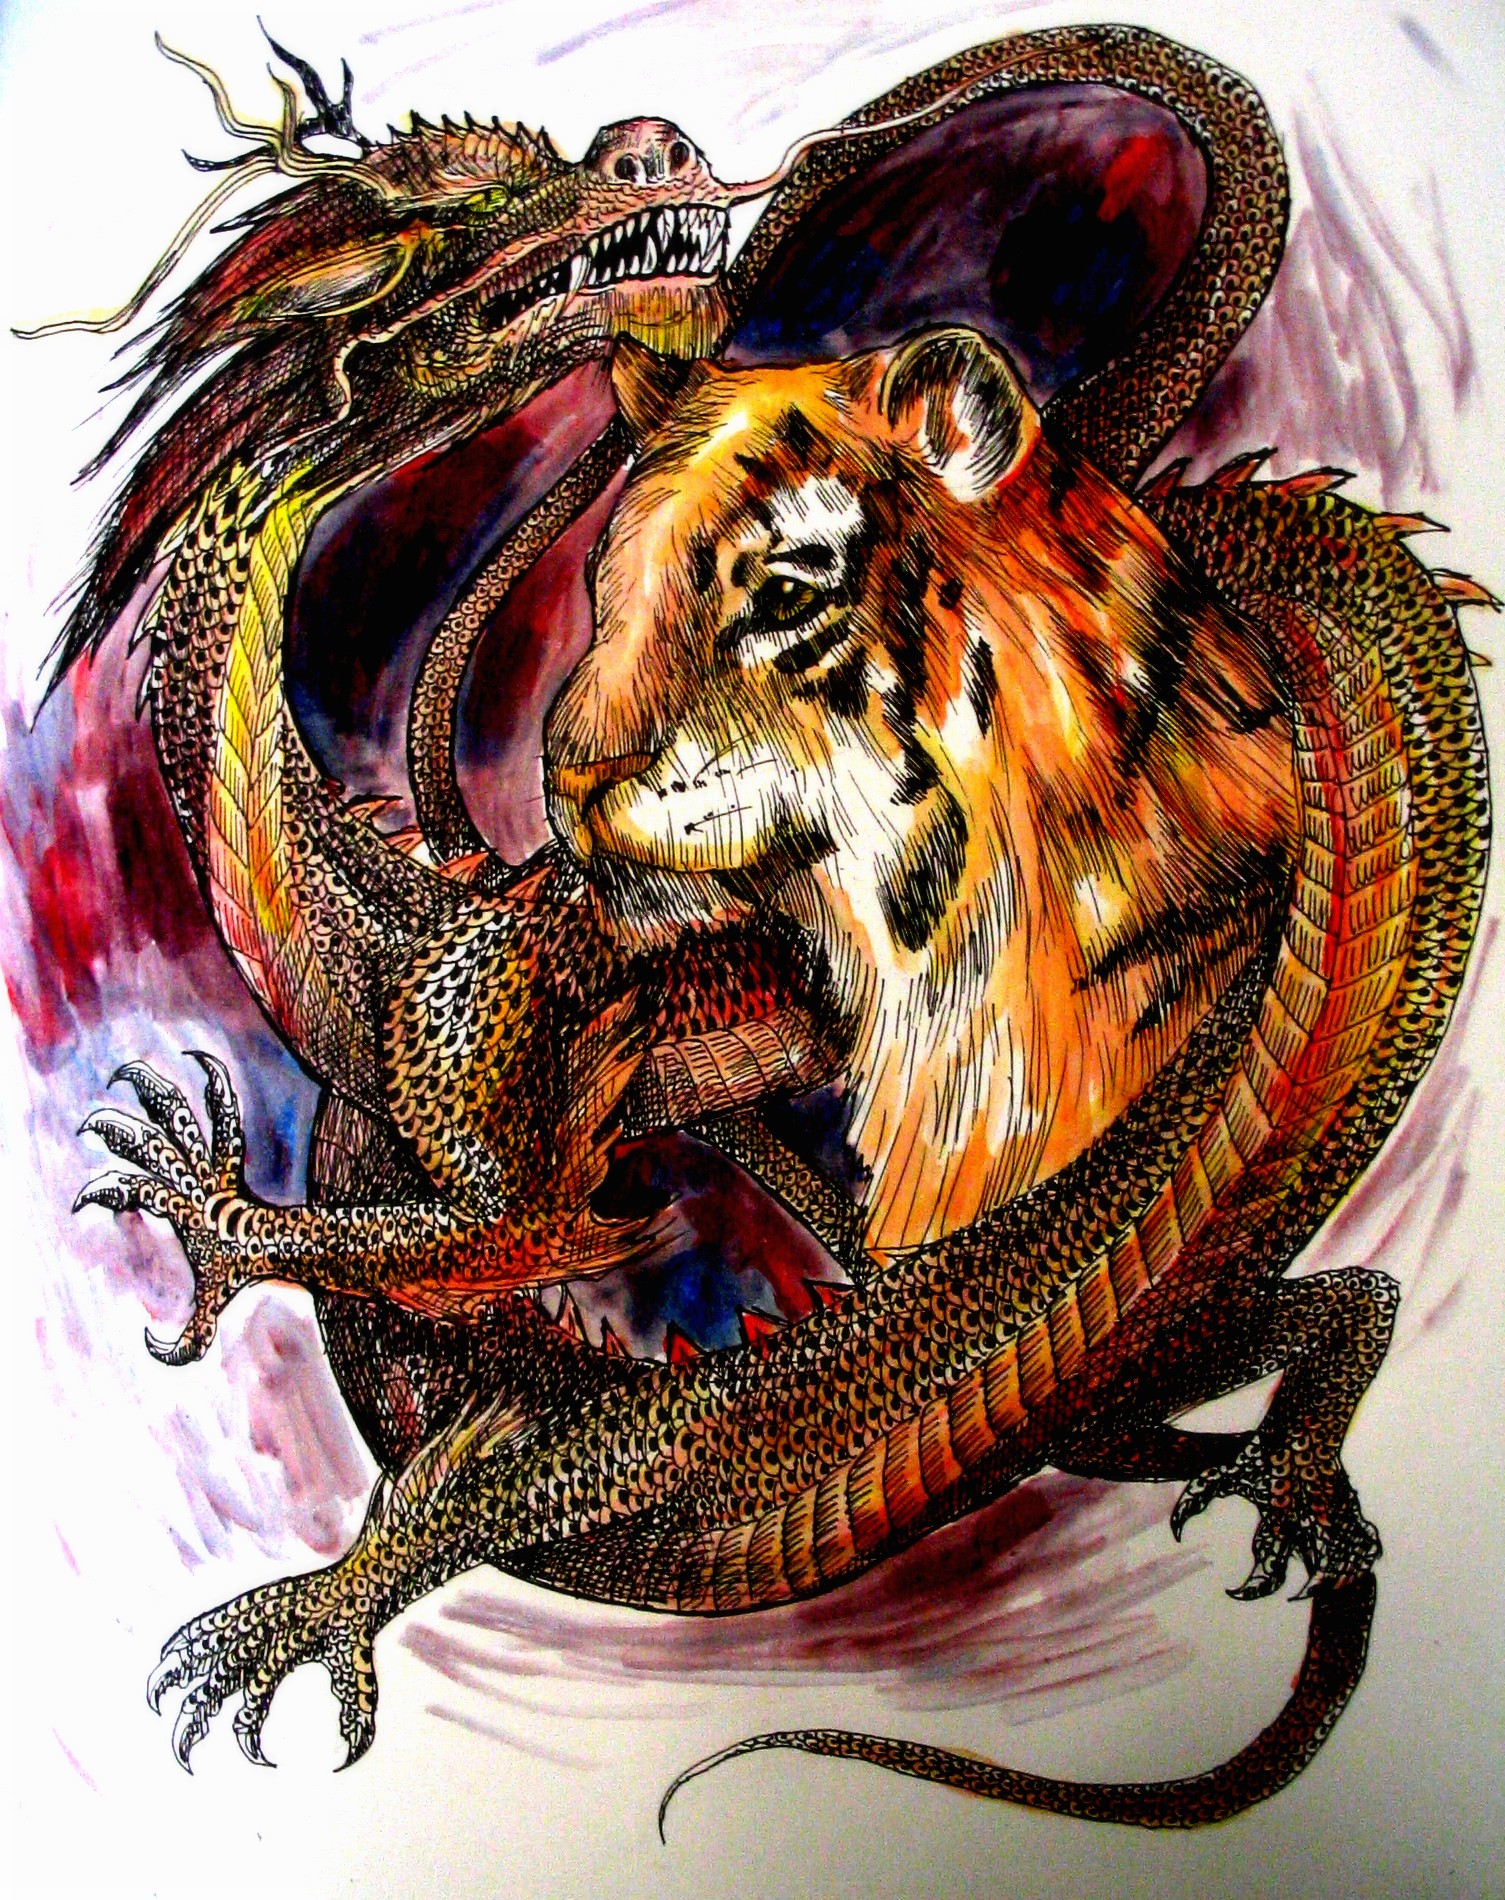 dragons vs tigers